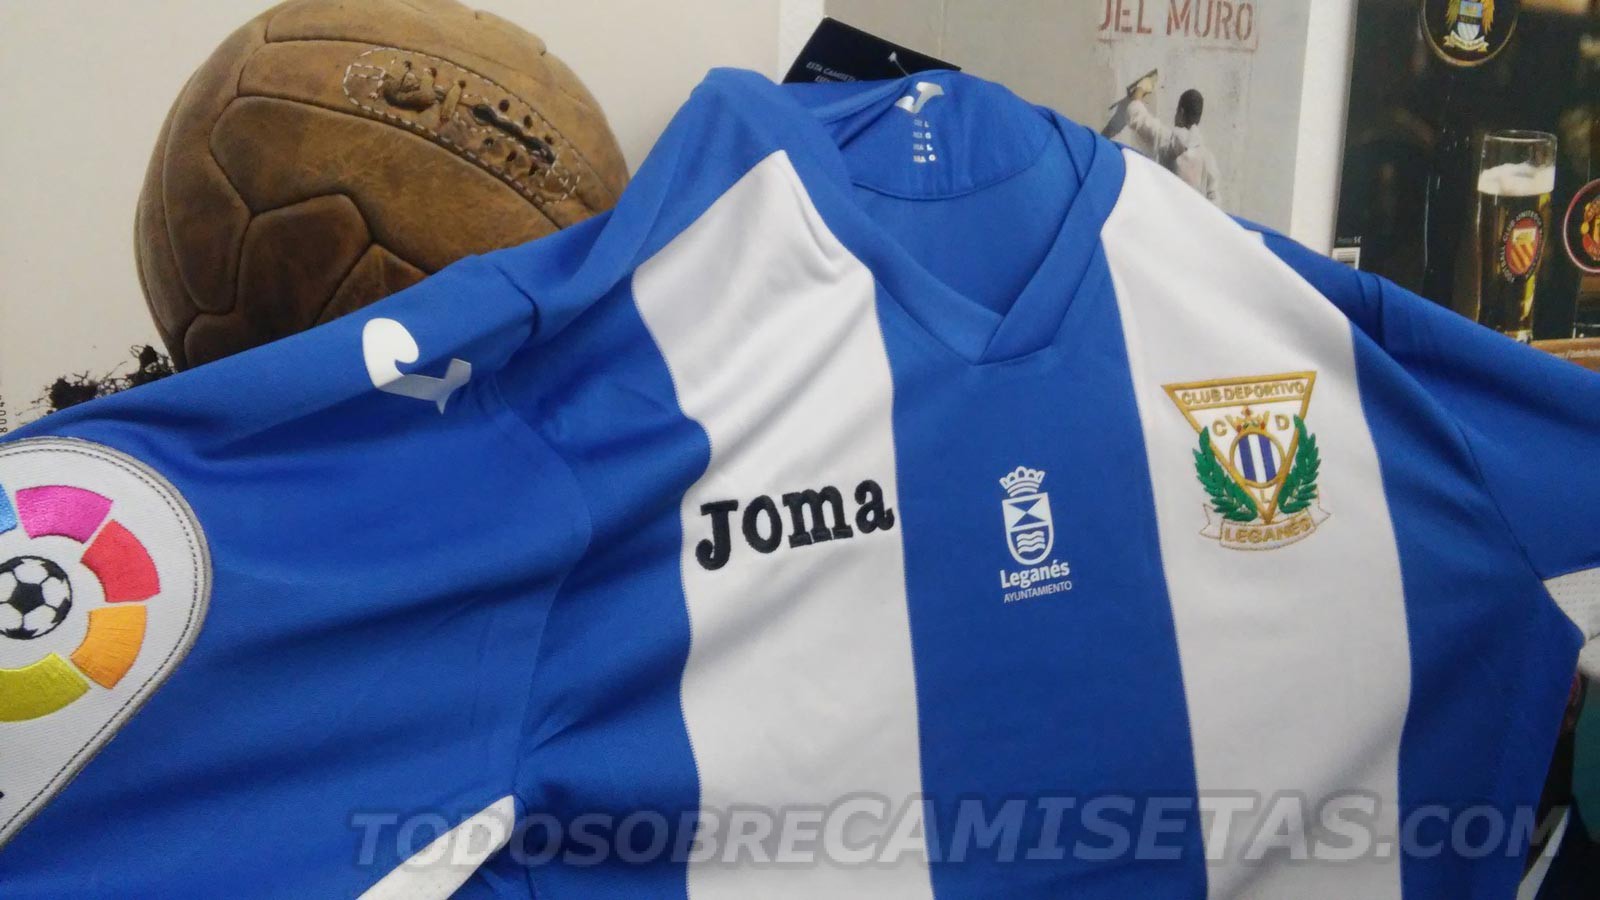 Camisetas Joma del Club Deportivo Leganés 2016-17